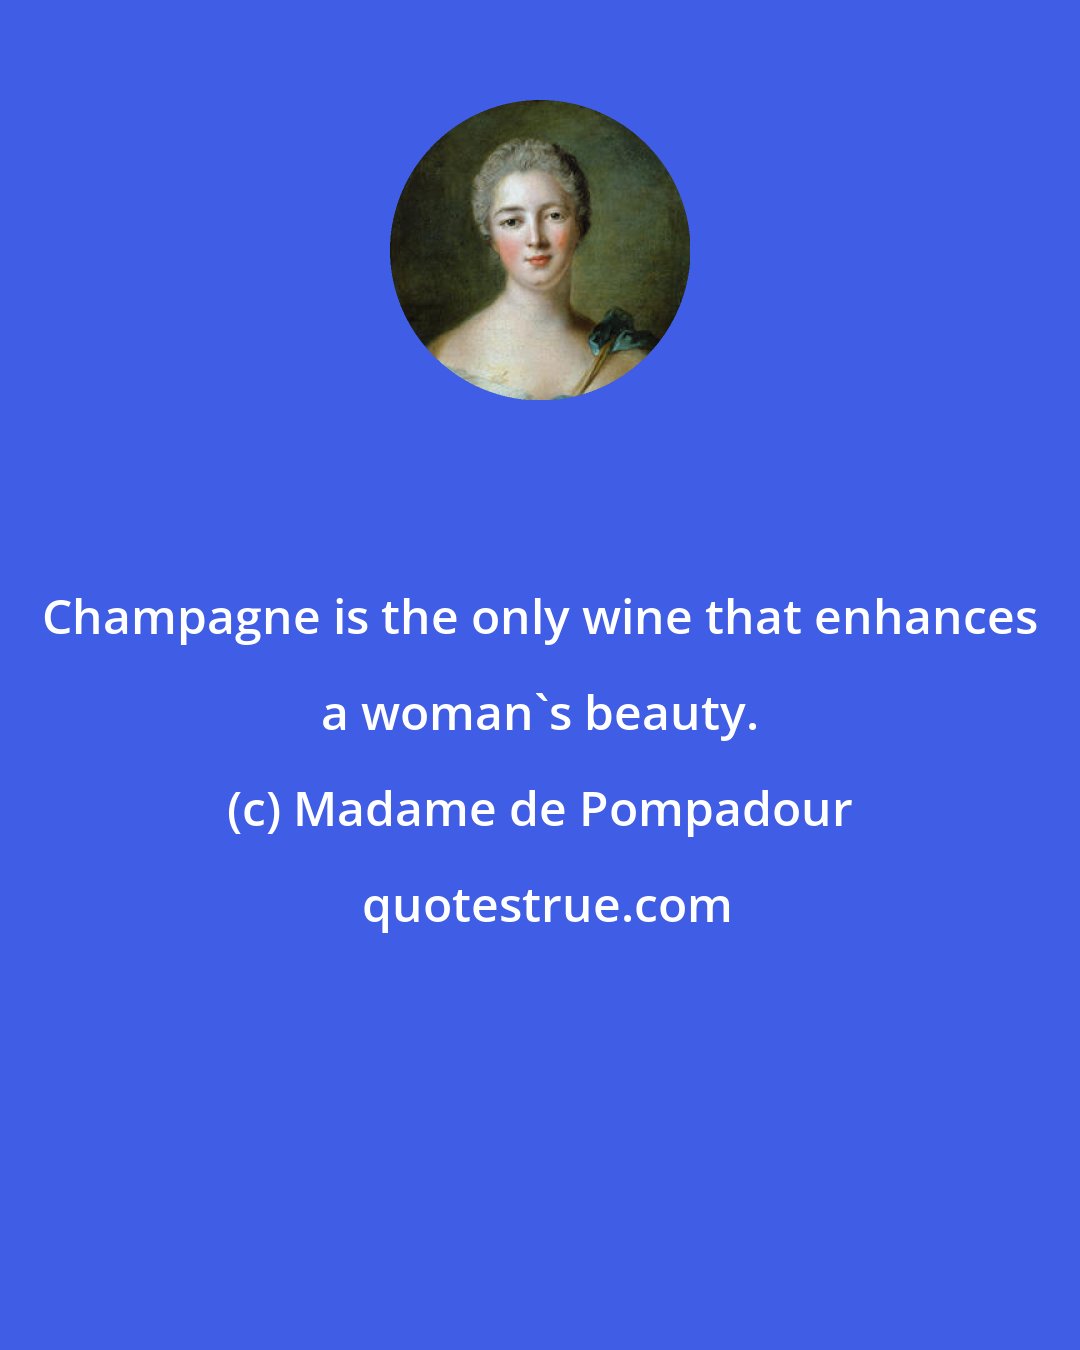 Madame de Pompadour: Champagne is the only wine that enhances a woman's beauty.